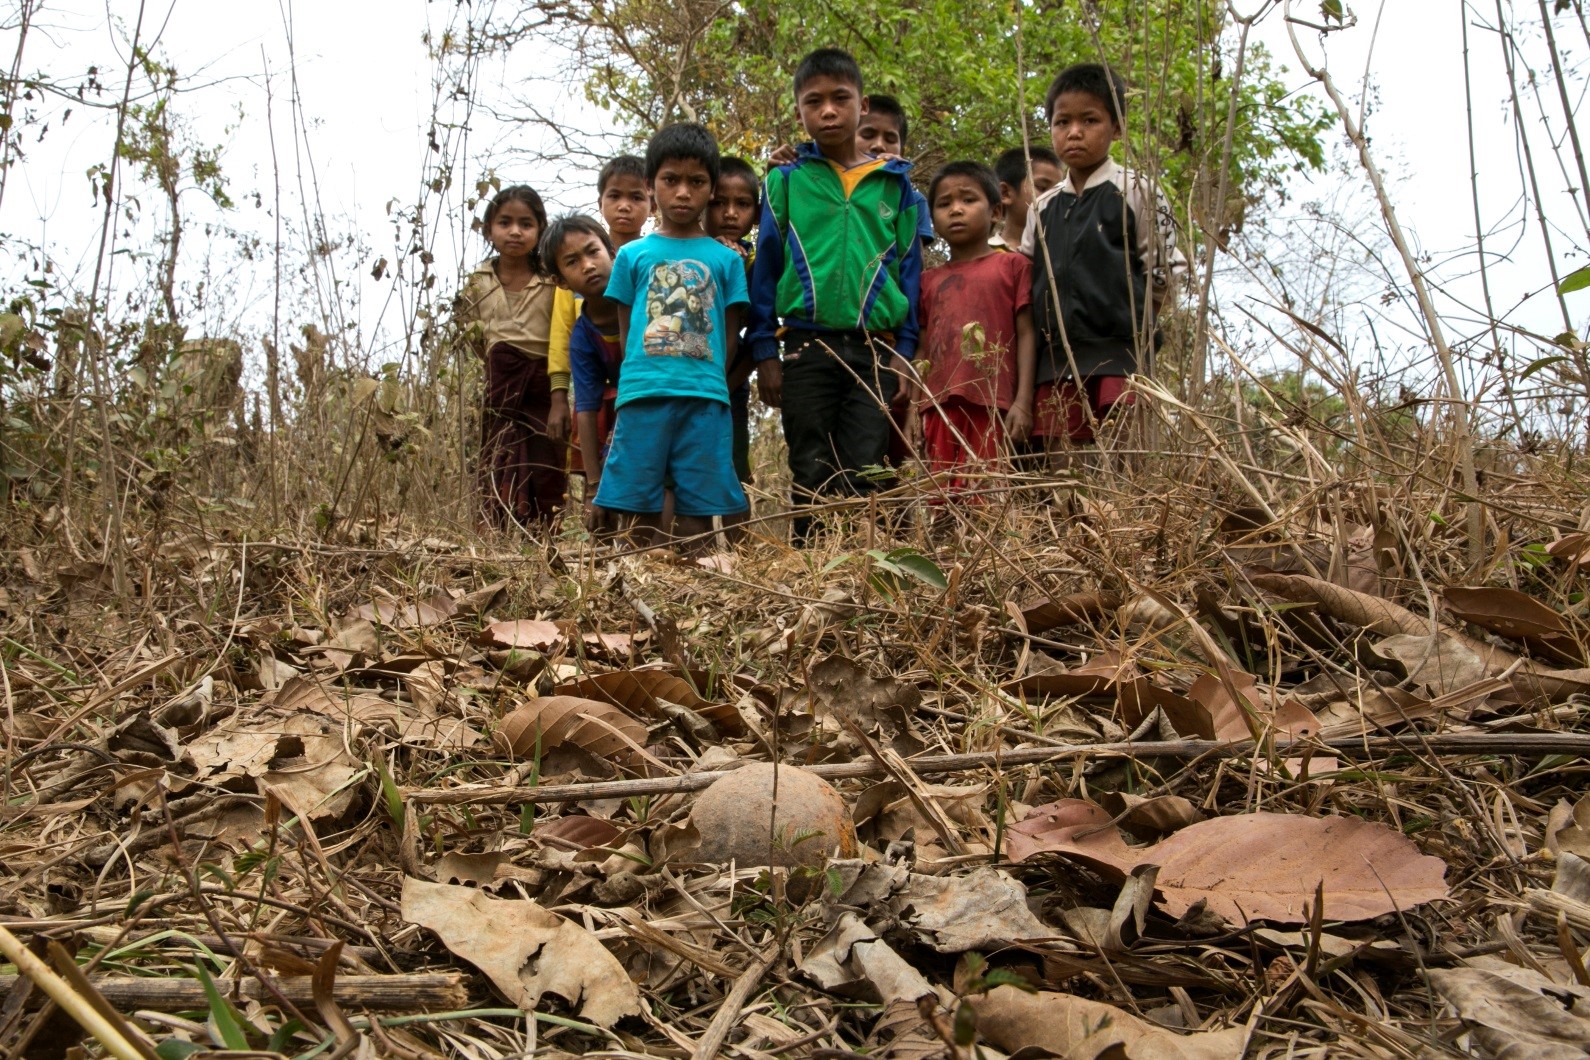 District de Toumlan, village de Nadoo Yai. Des enfants regardent une sous-munition non explosée qui a été trouvée près de leur village.